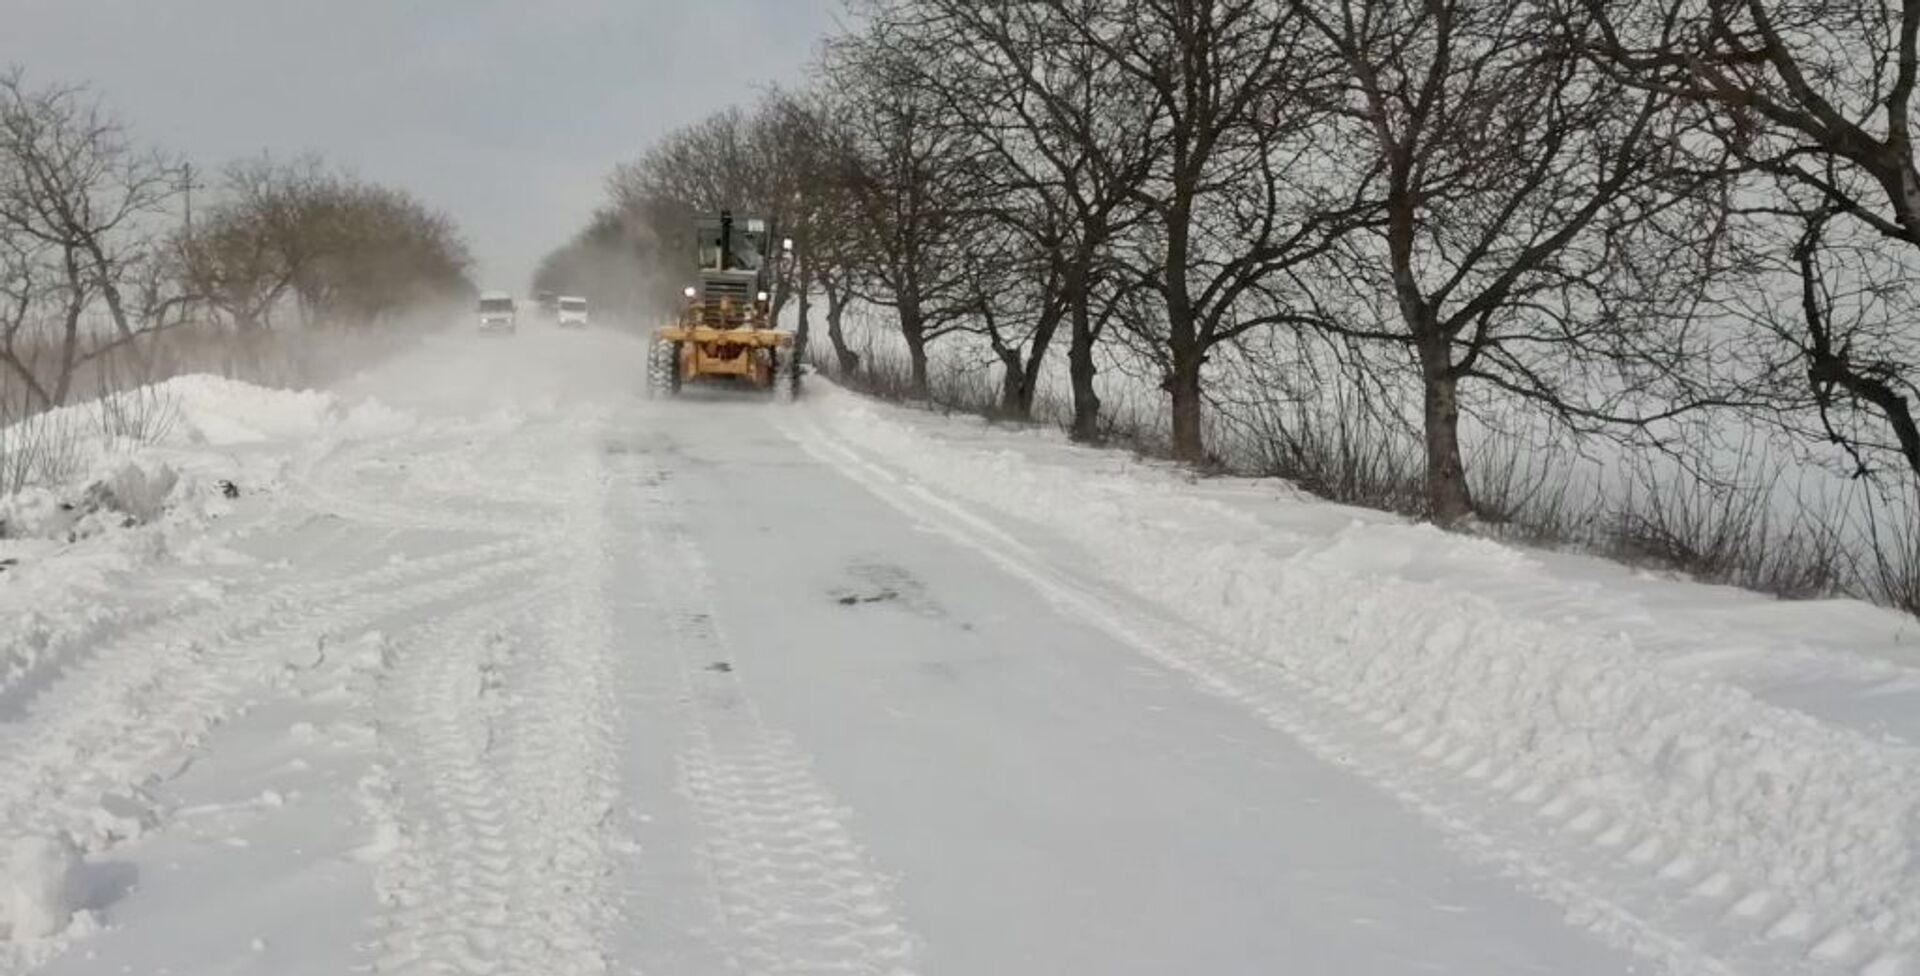 Foto: Drumurile sunt lunecoase și periculoase – unde a nins puternic și ce vreme urmează - Sputnik Moldova, 1920, 13.02.2021